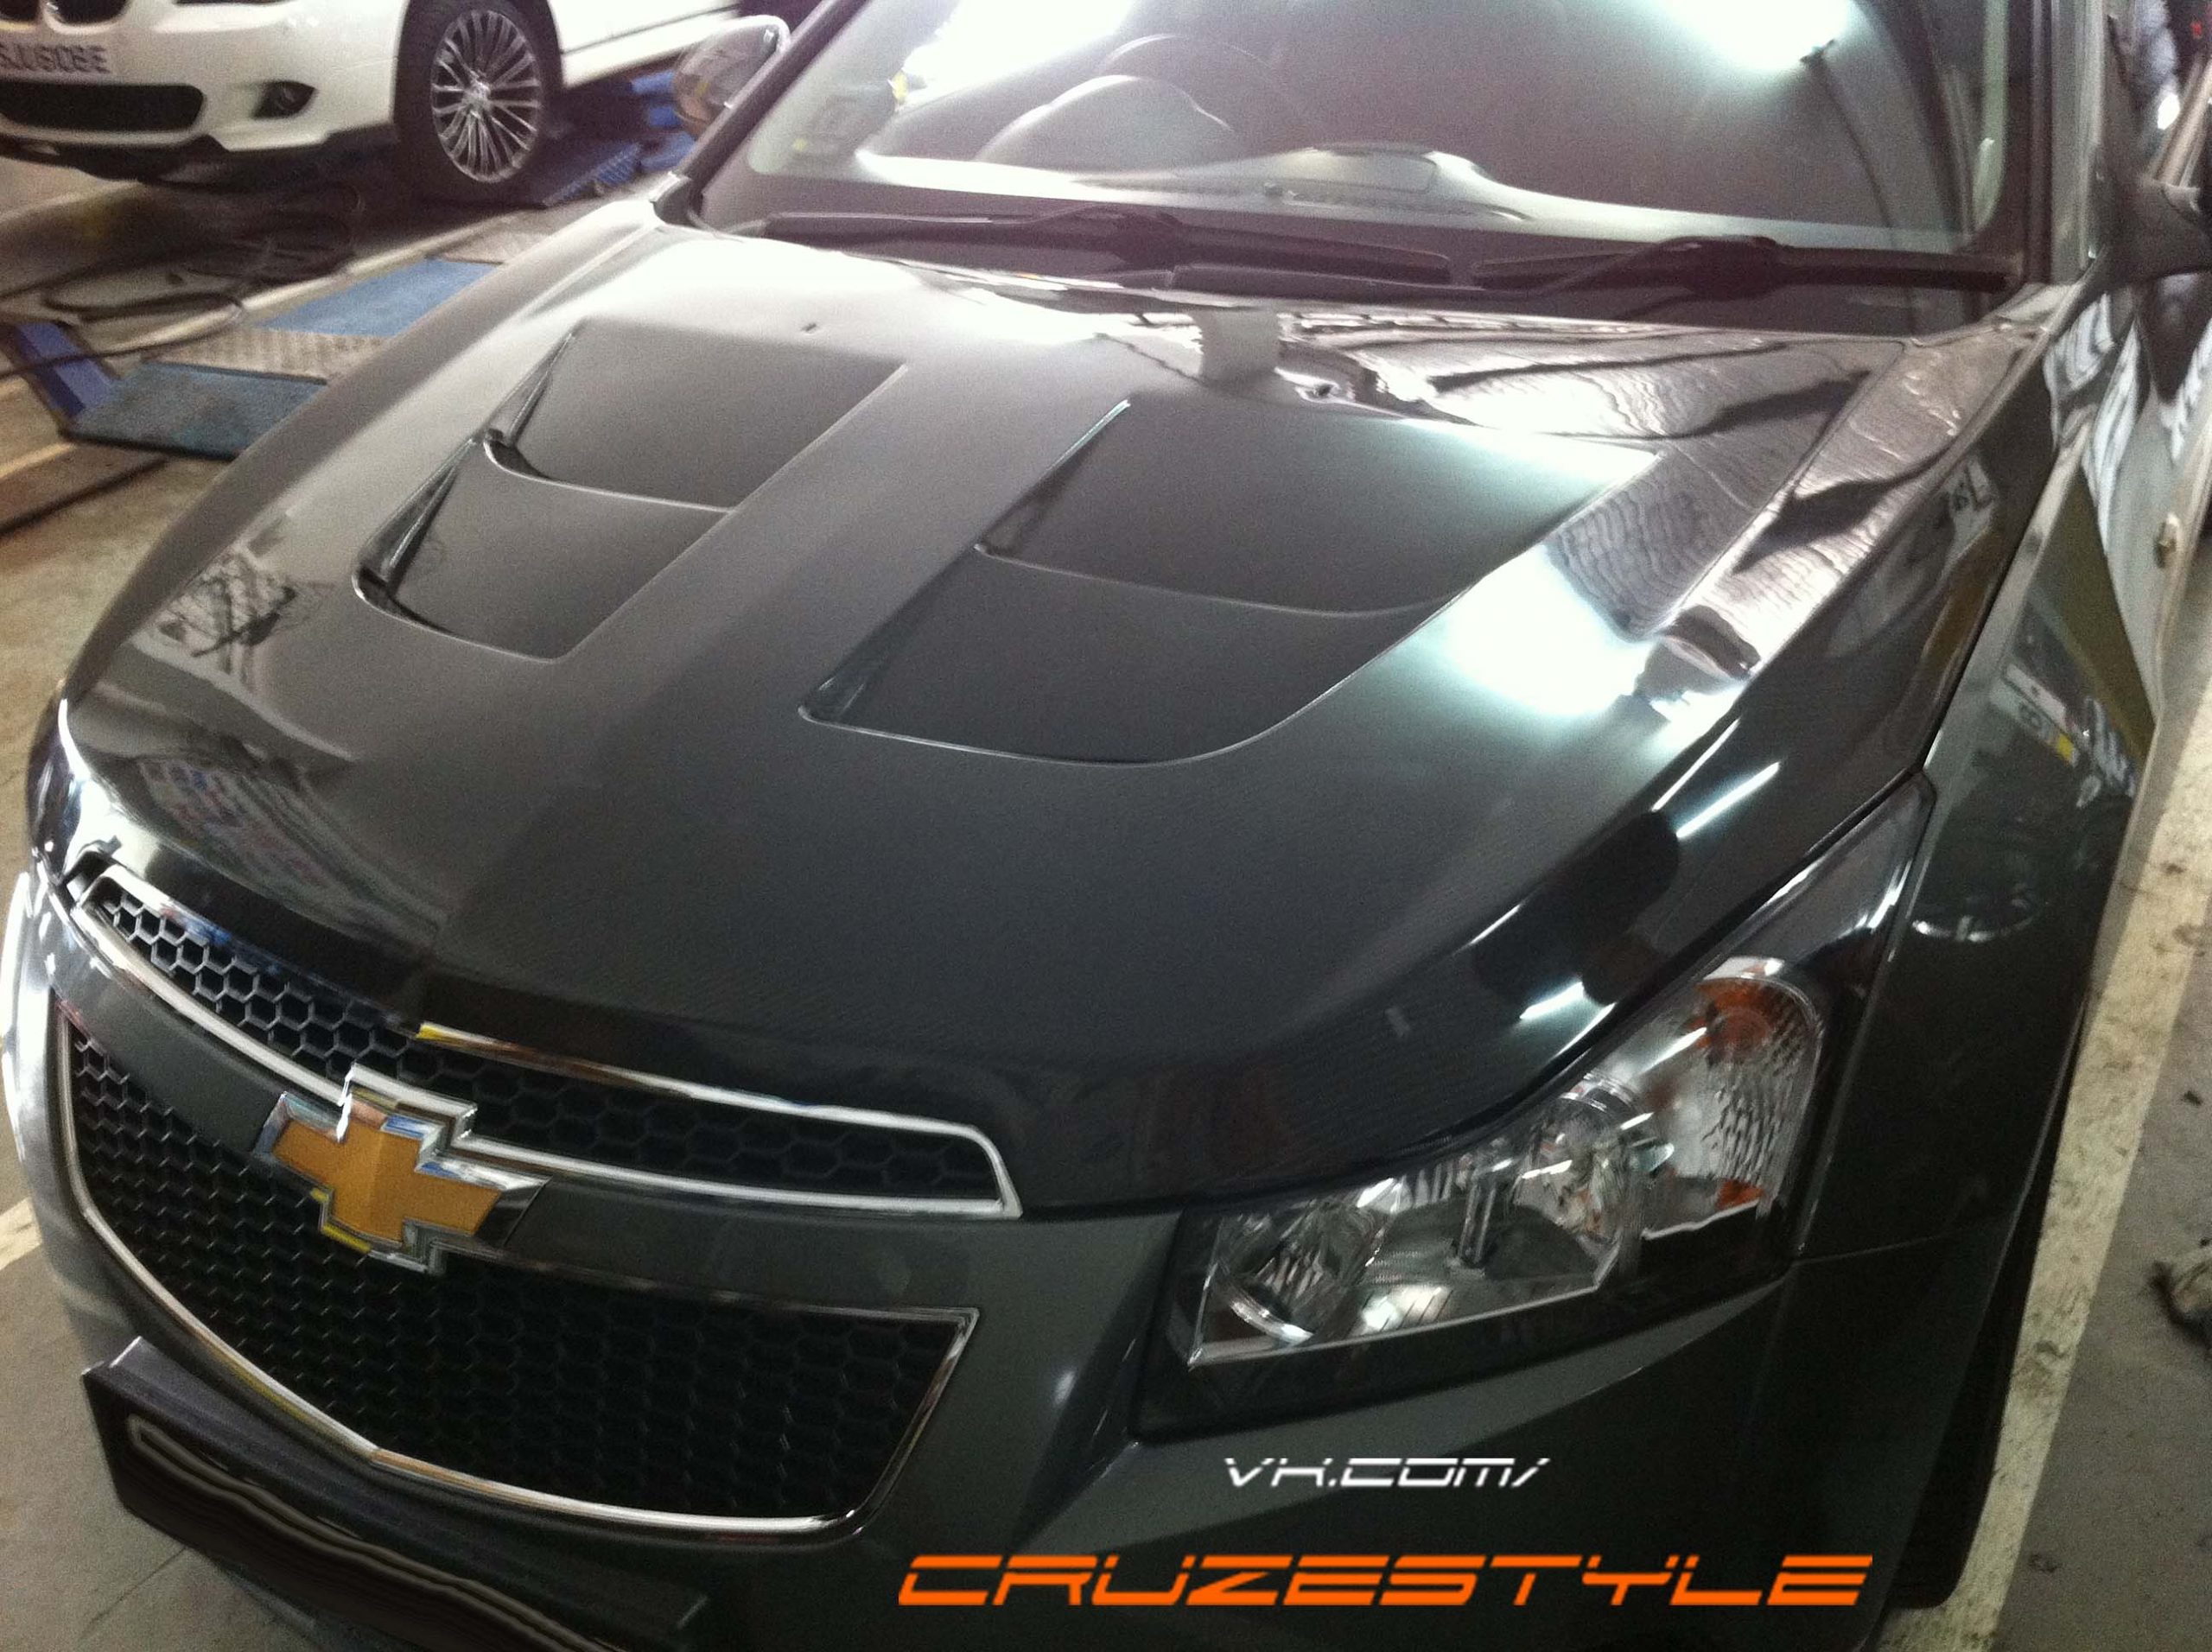 Тюнинг Chevrolet Cruze своими руками. Тюнинг двигателя, салона и кузова Шевроле Круз.